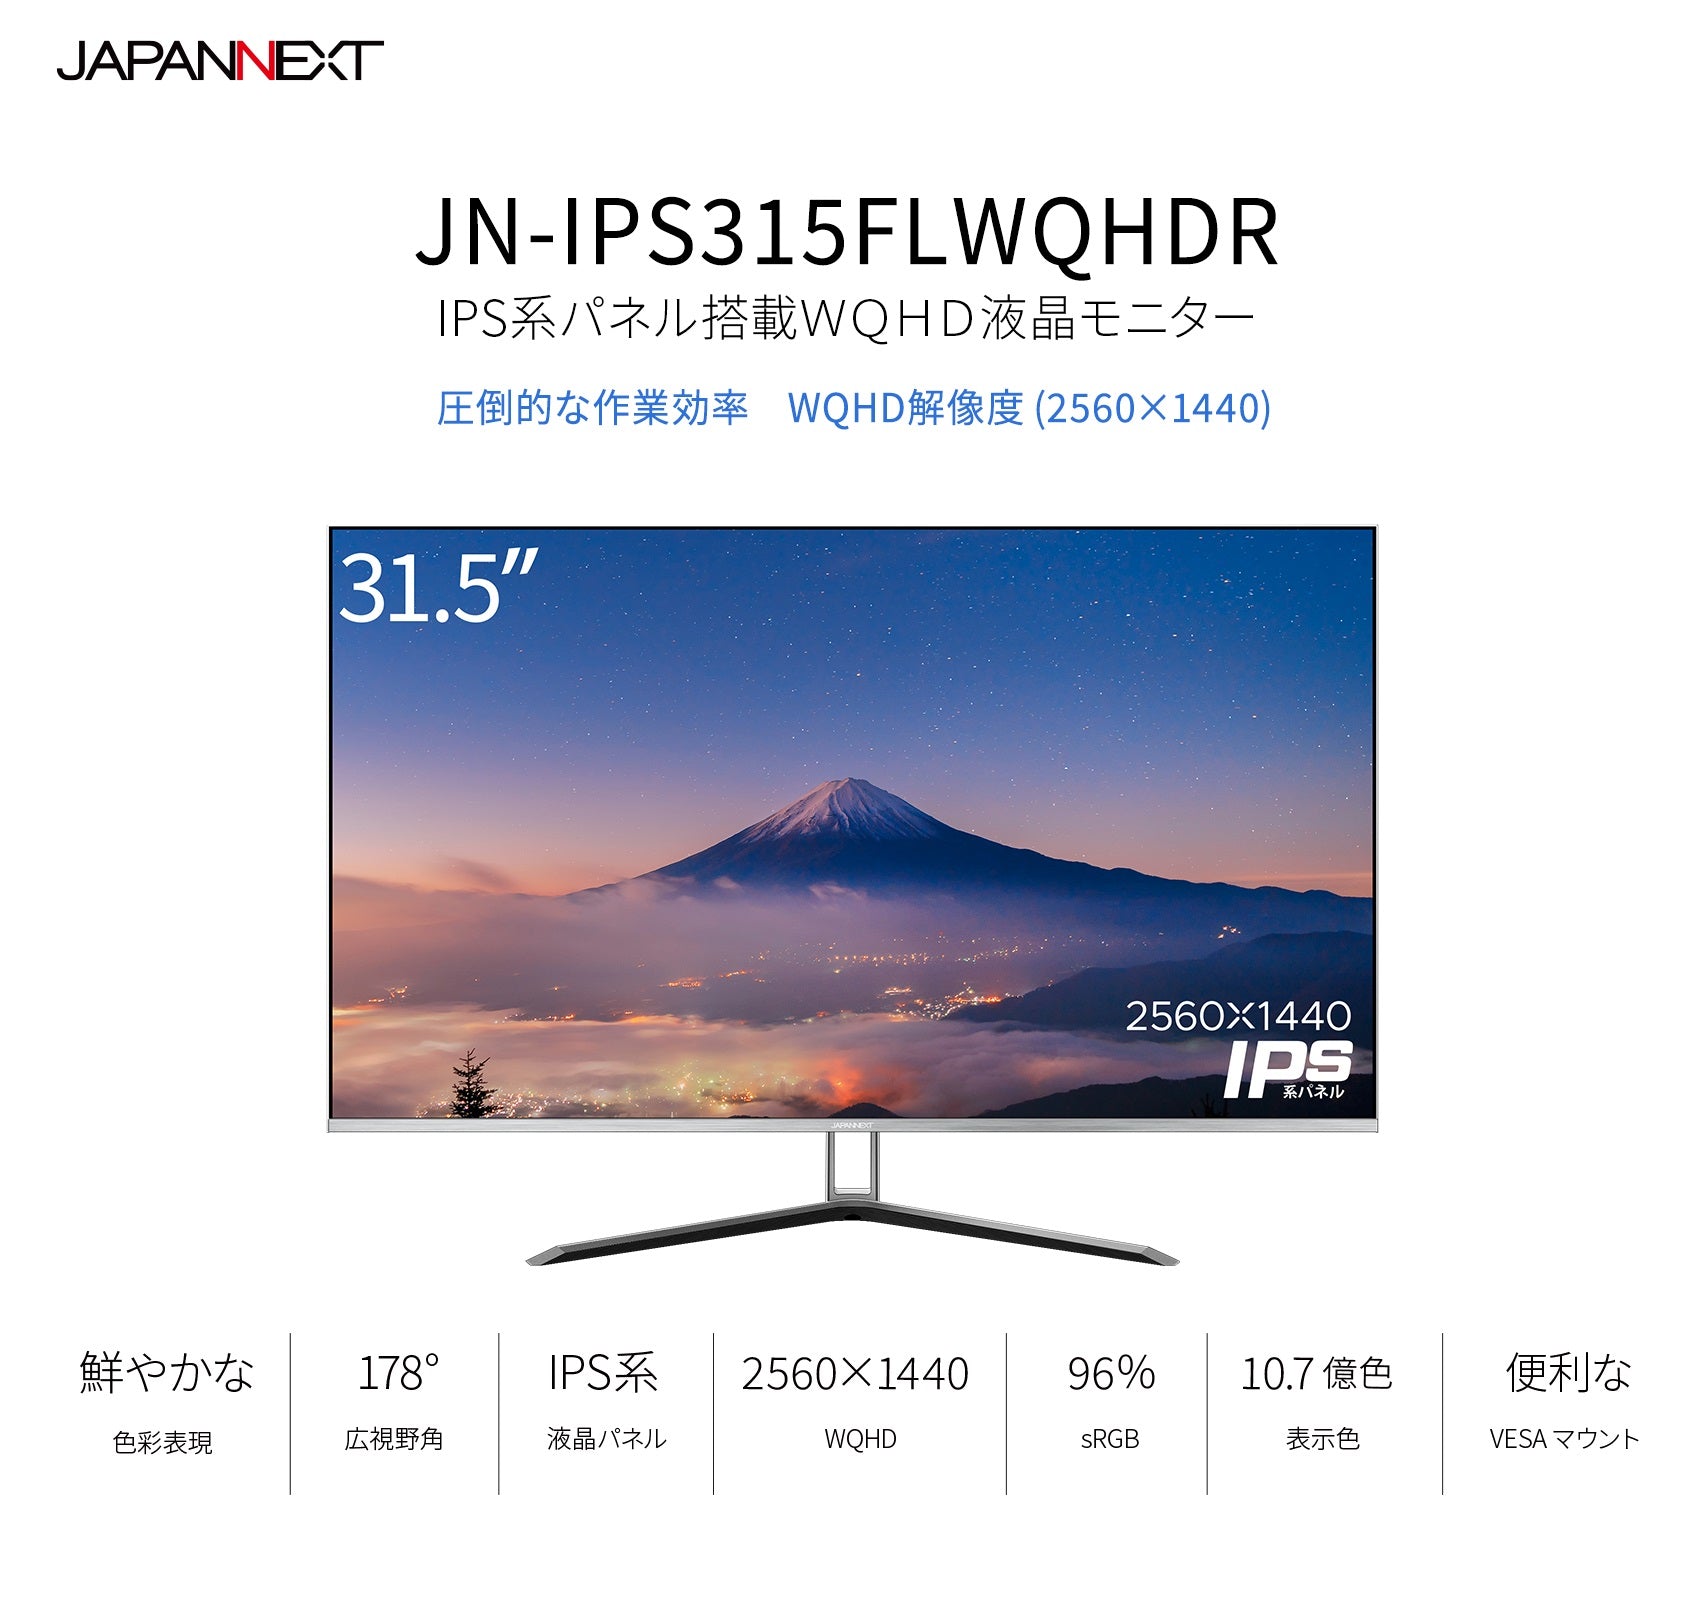 JAPANNEXT IPSパネル 31.5インチ WQHD(2560 x 1440) 液晶モニター JN